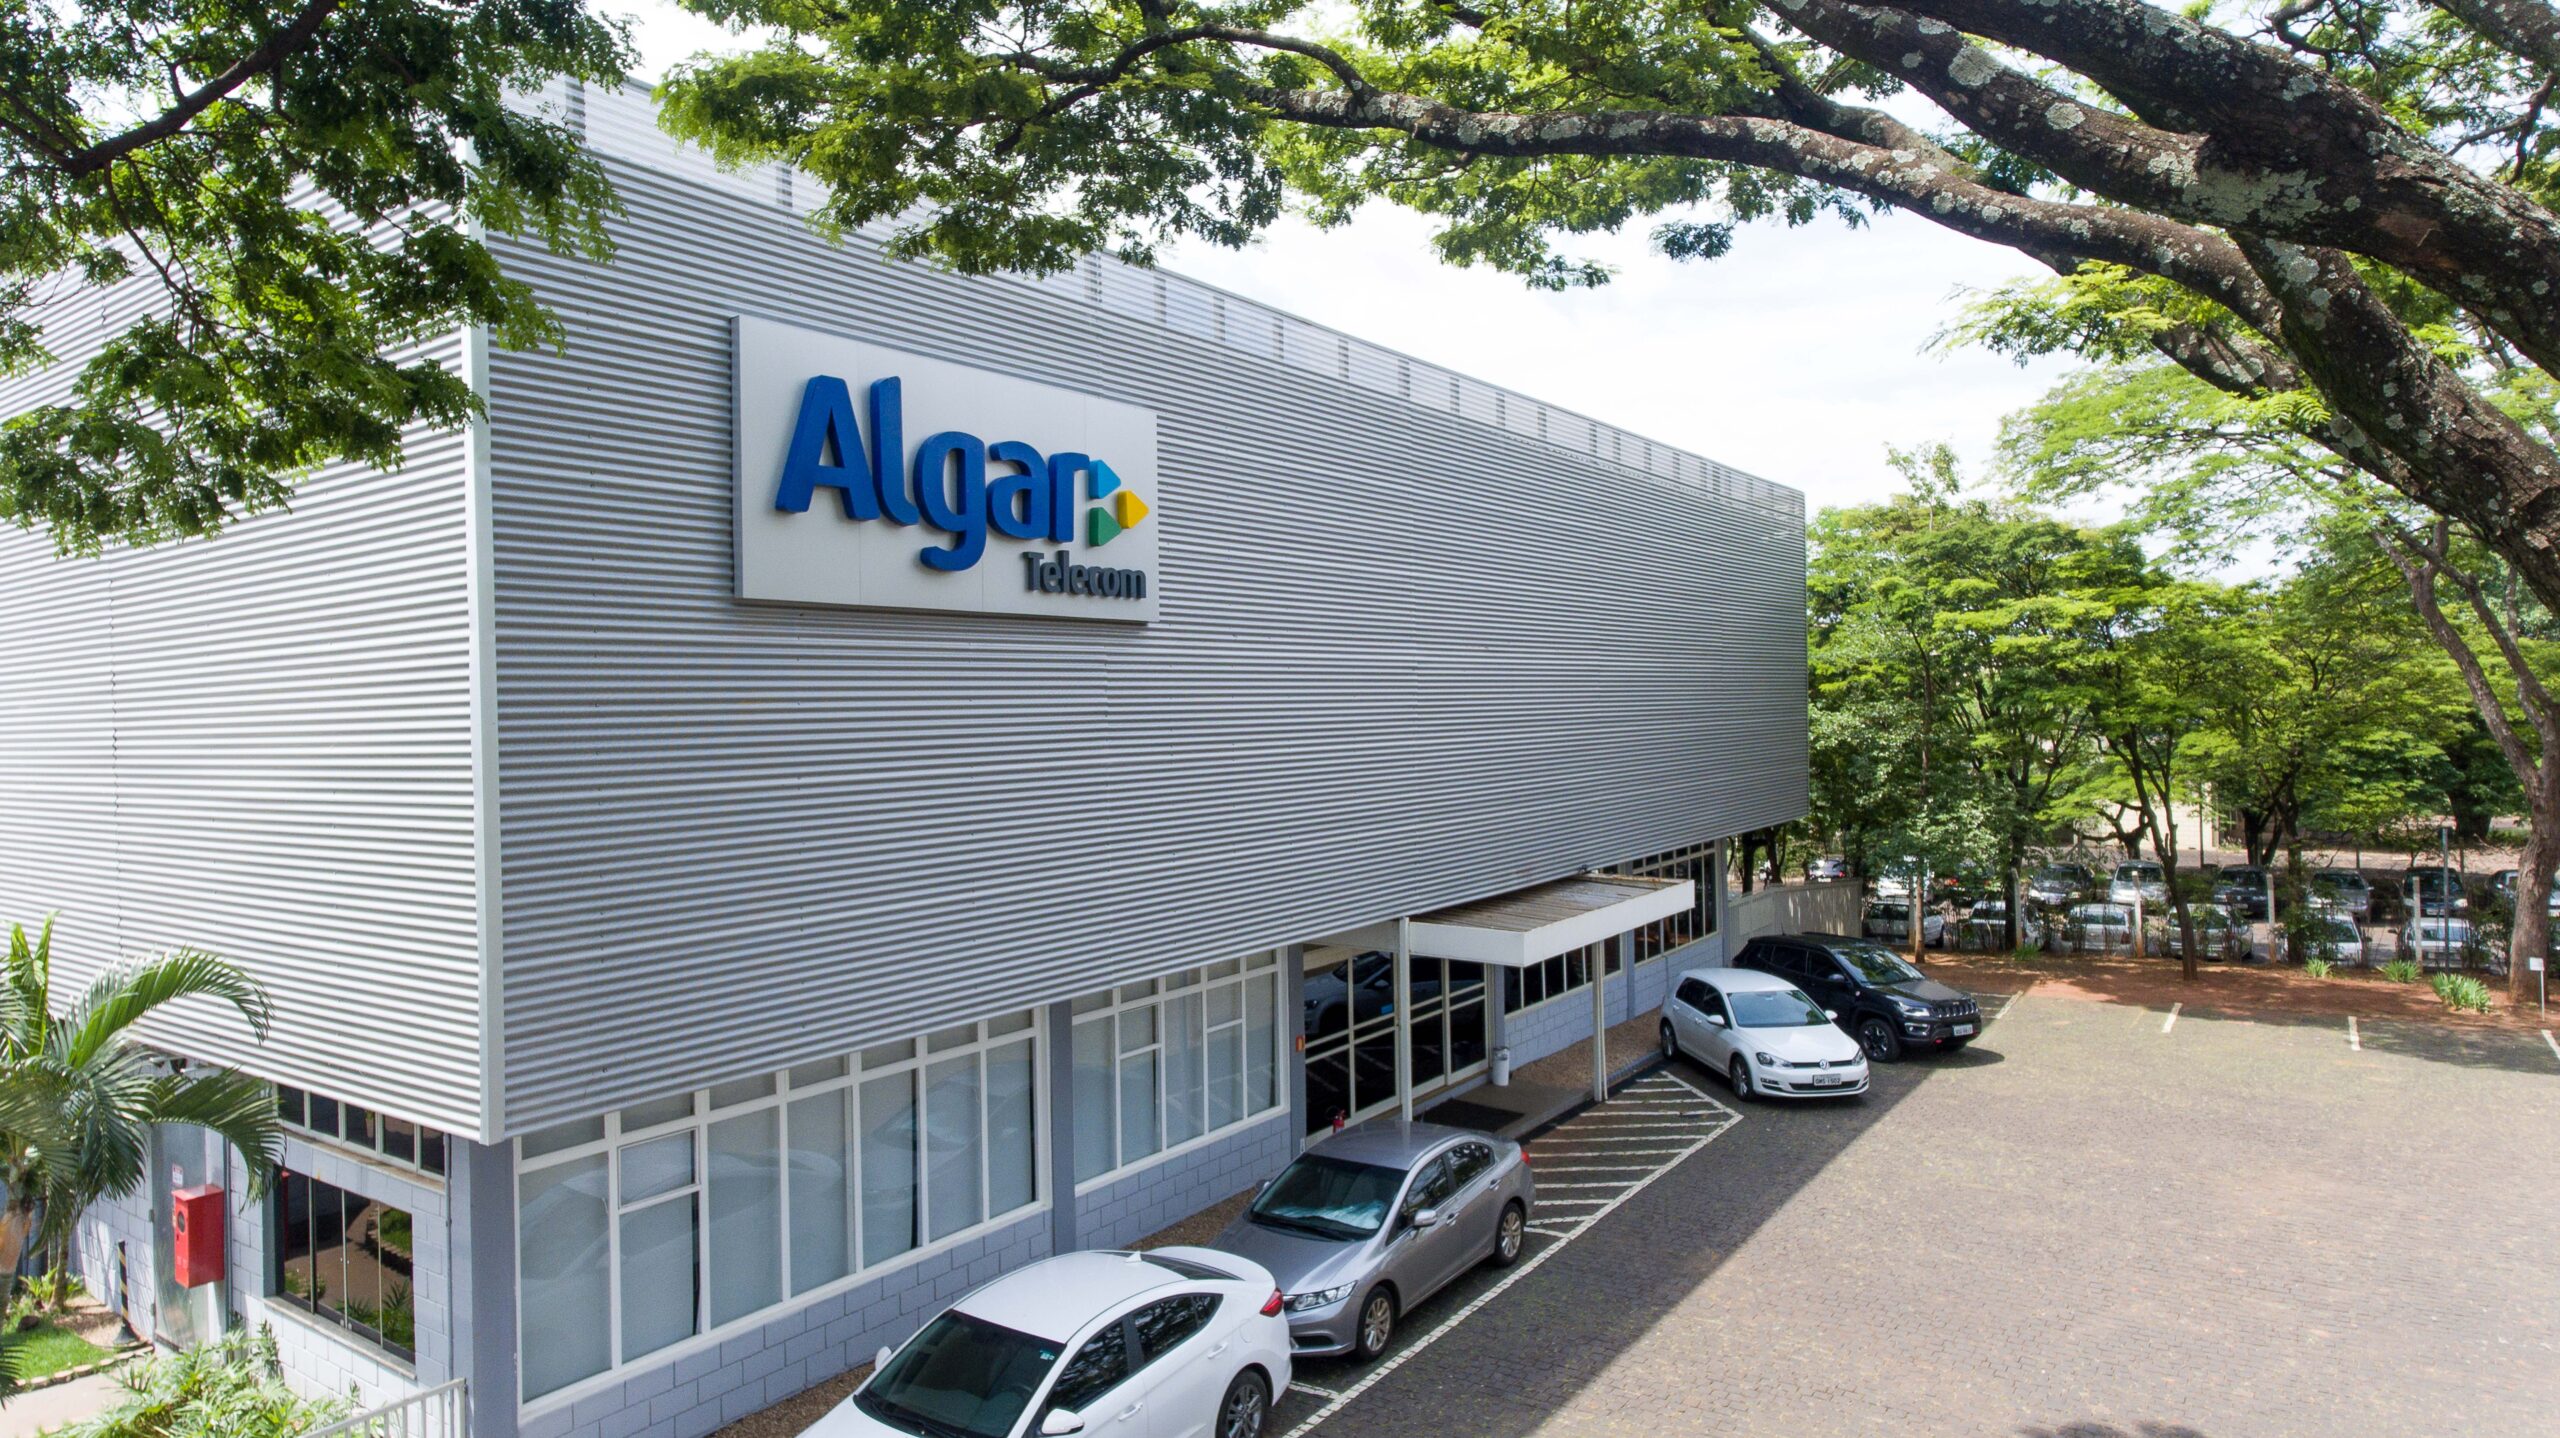 Brain, centro de inovação da Algar Telecom, anuncia novo presidente